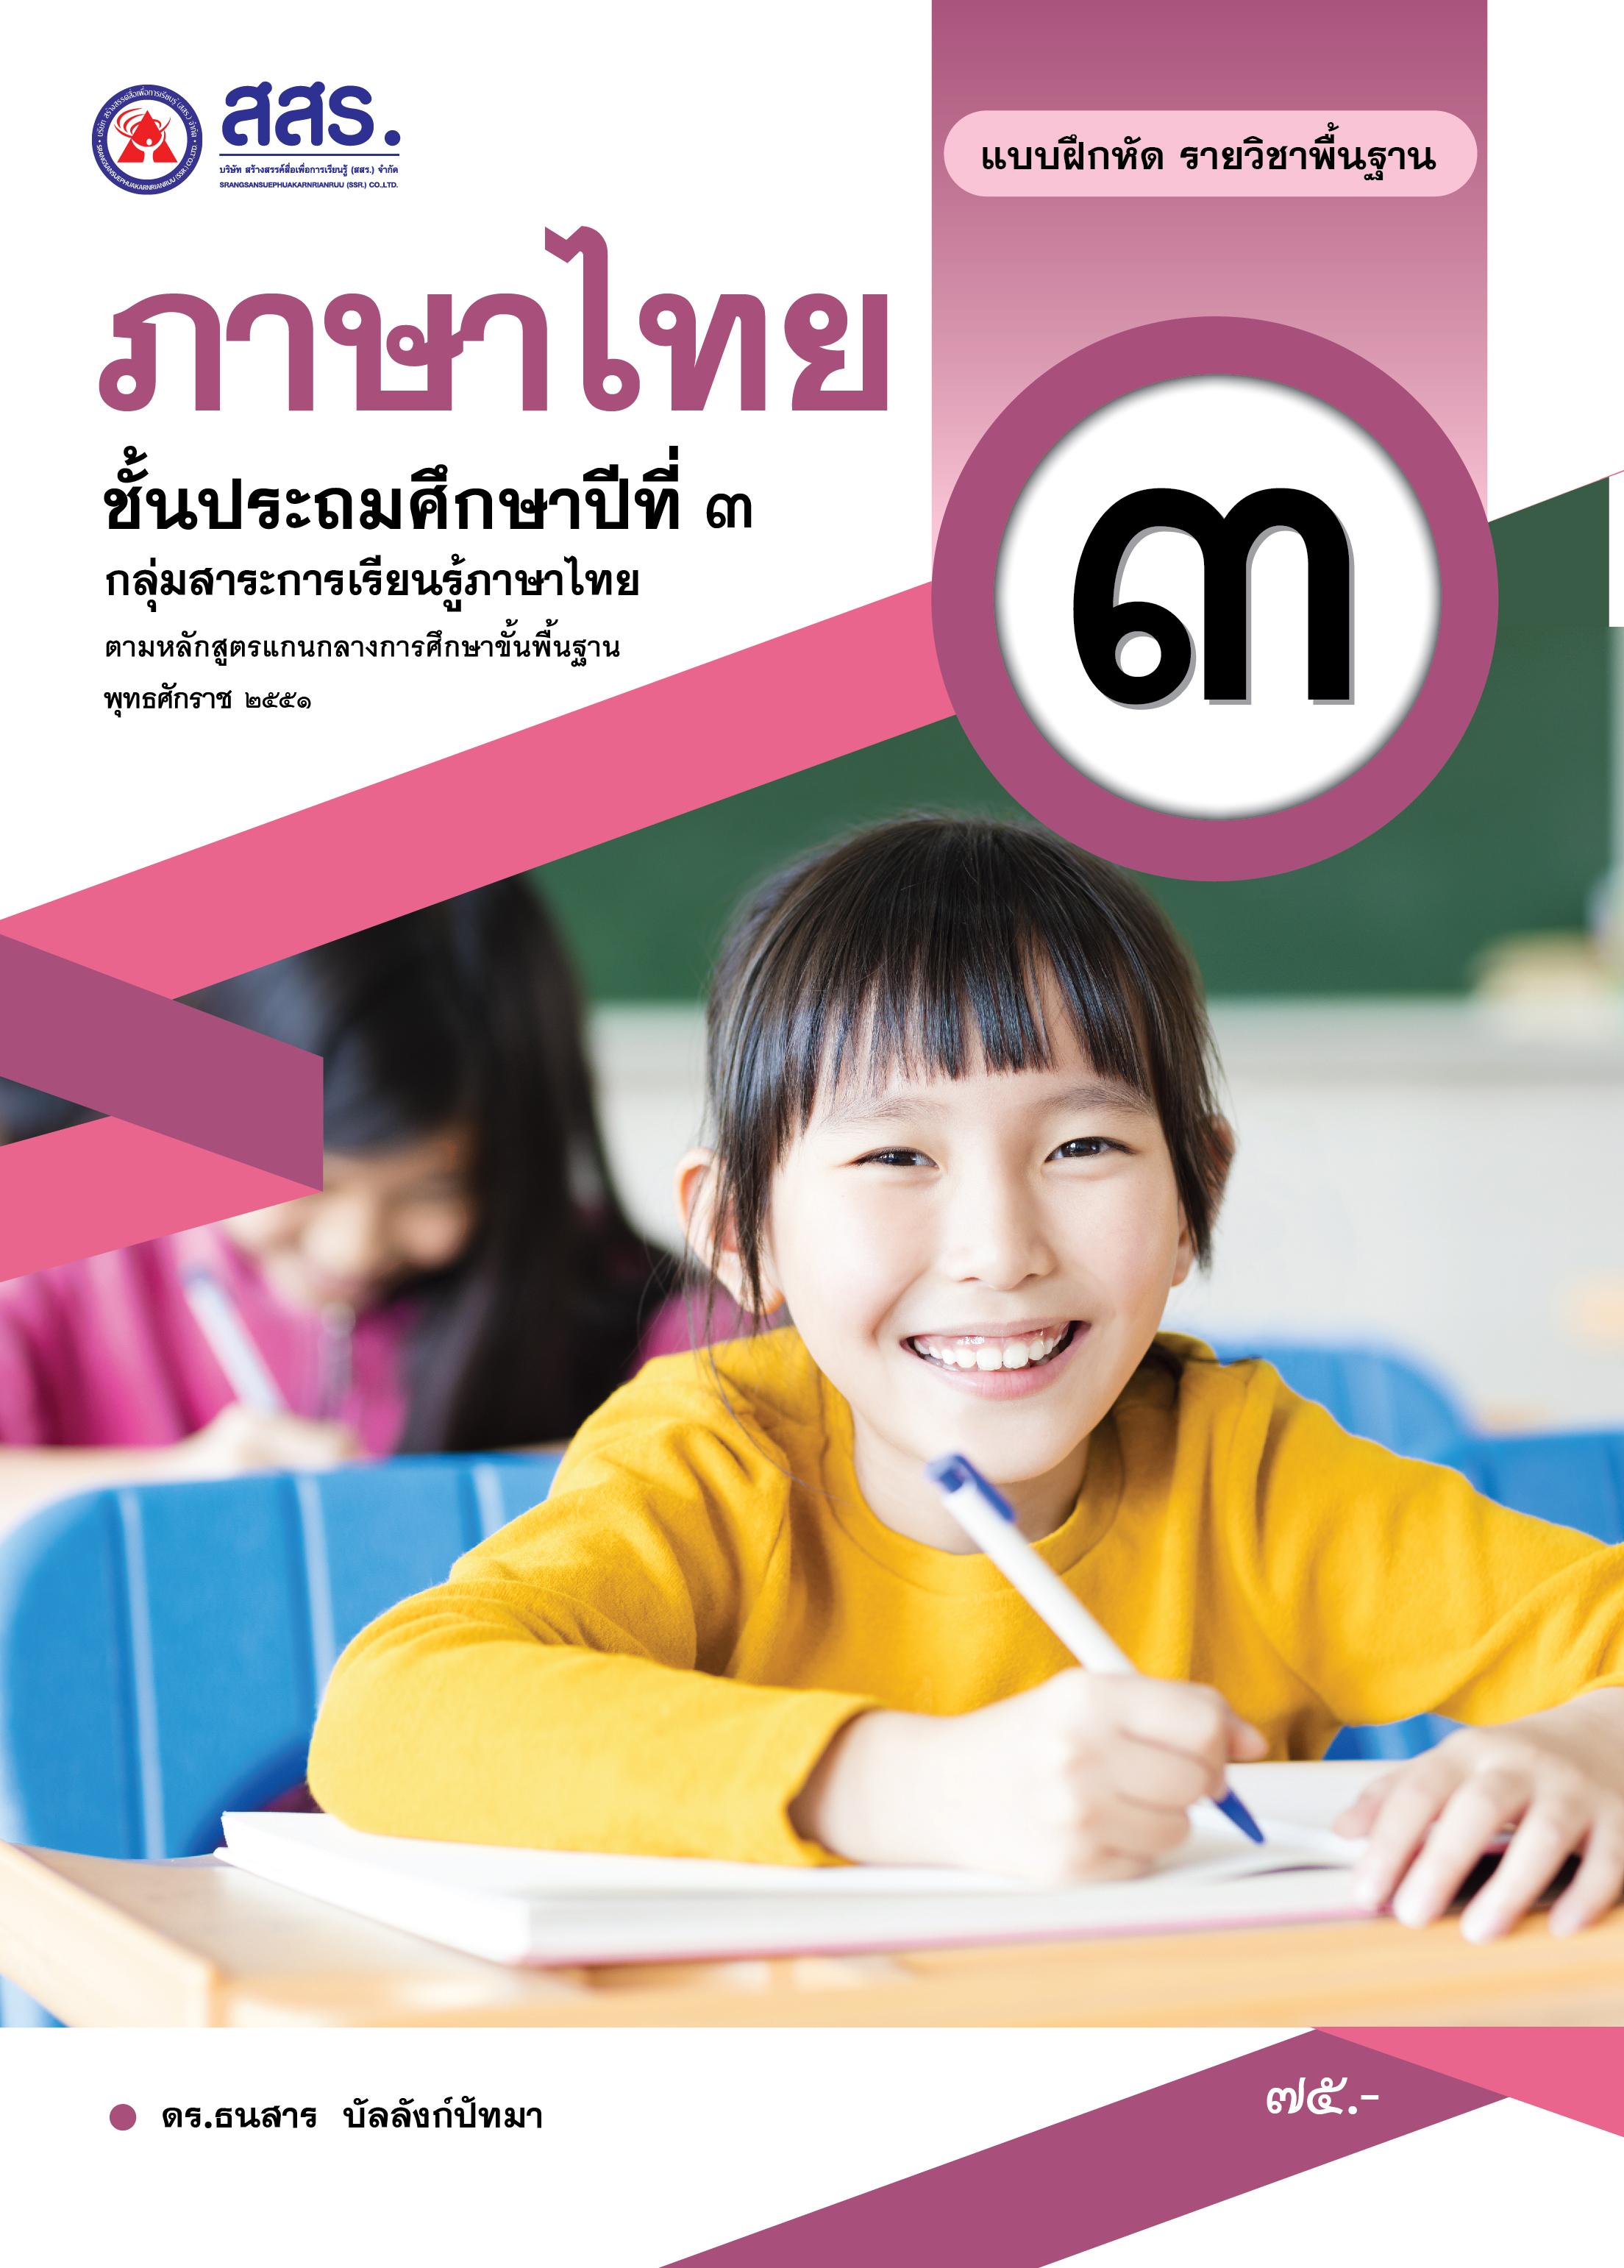 แบบฝึกหัดรายวิชาพื้นฐาน ภาษาไทย ชั้นประถมศึกษาปีที่ 3 (ฉบับใบอนุญาตฯ)